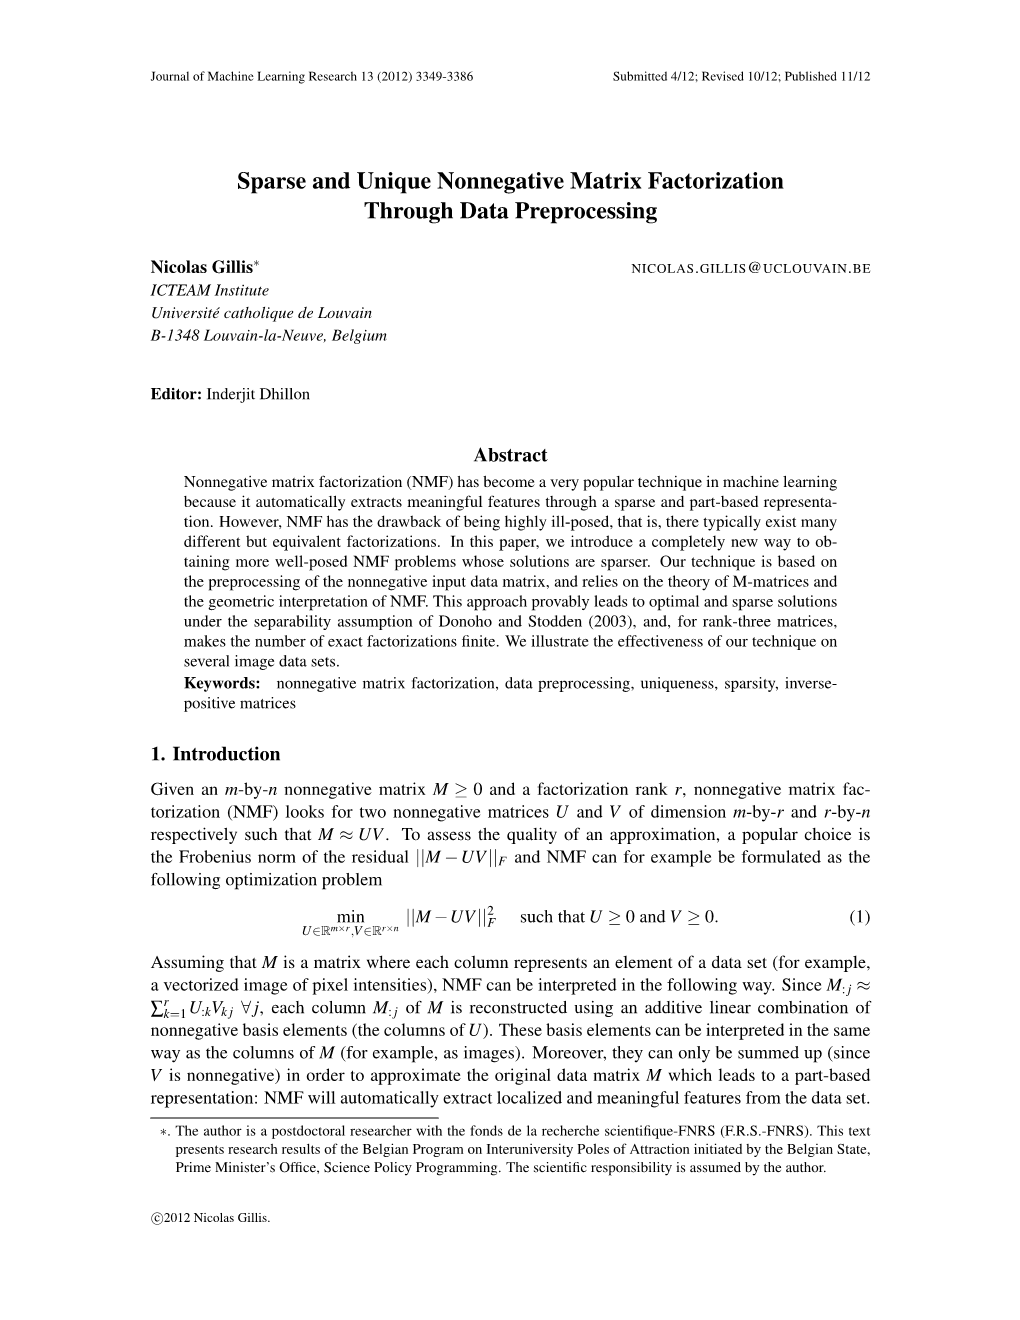 Sparse and Unique Nonnegative Matrix Factorization Through Data Preprocessing